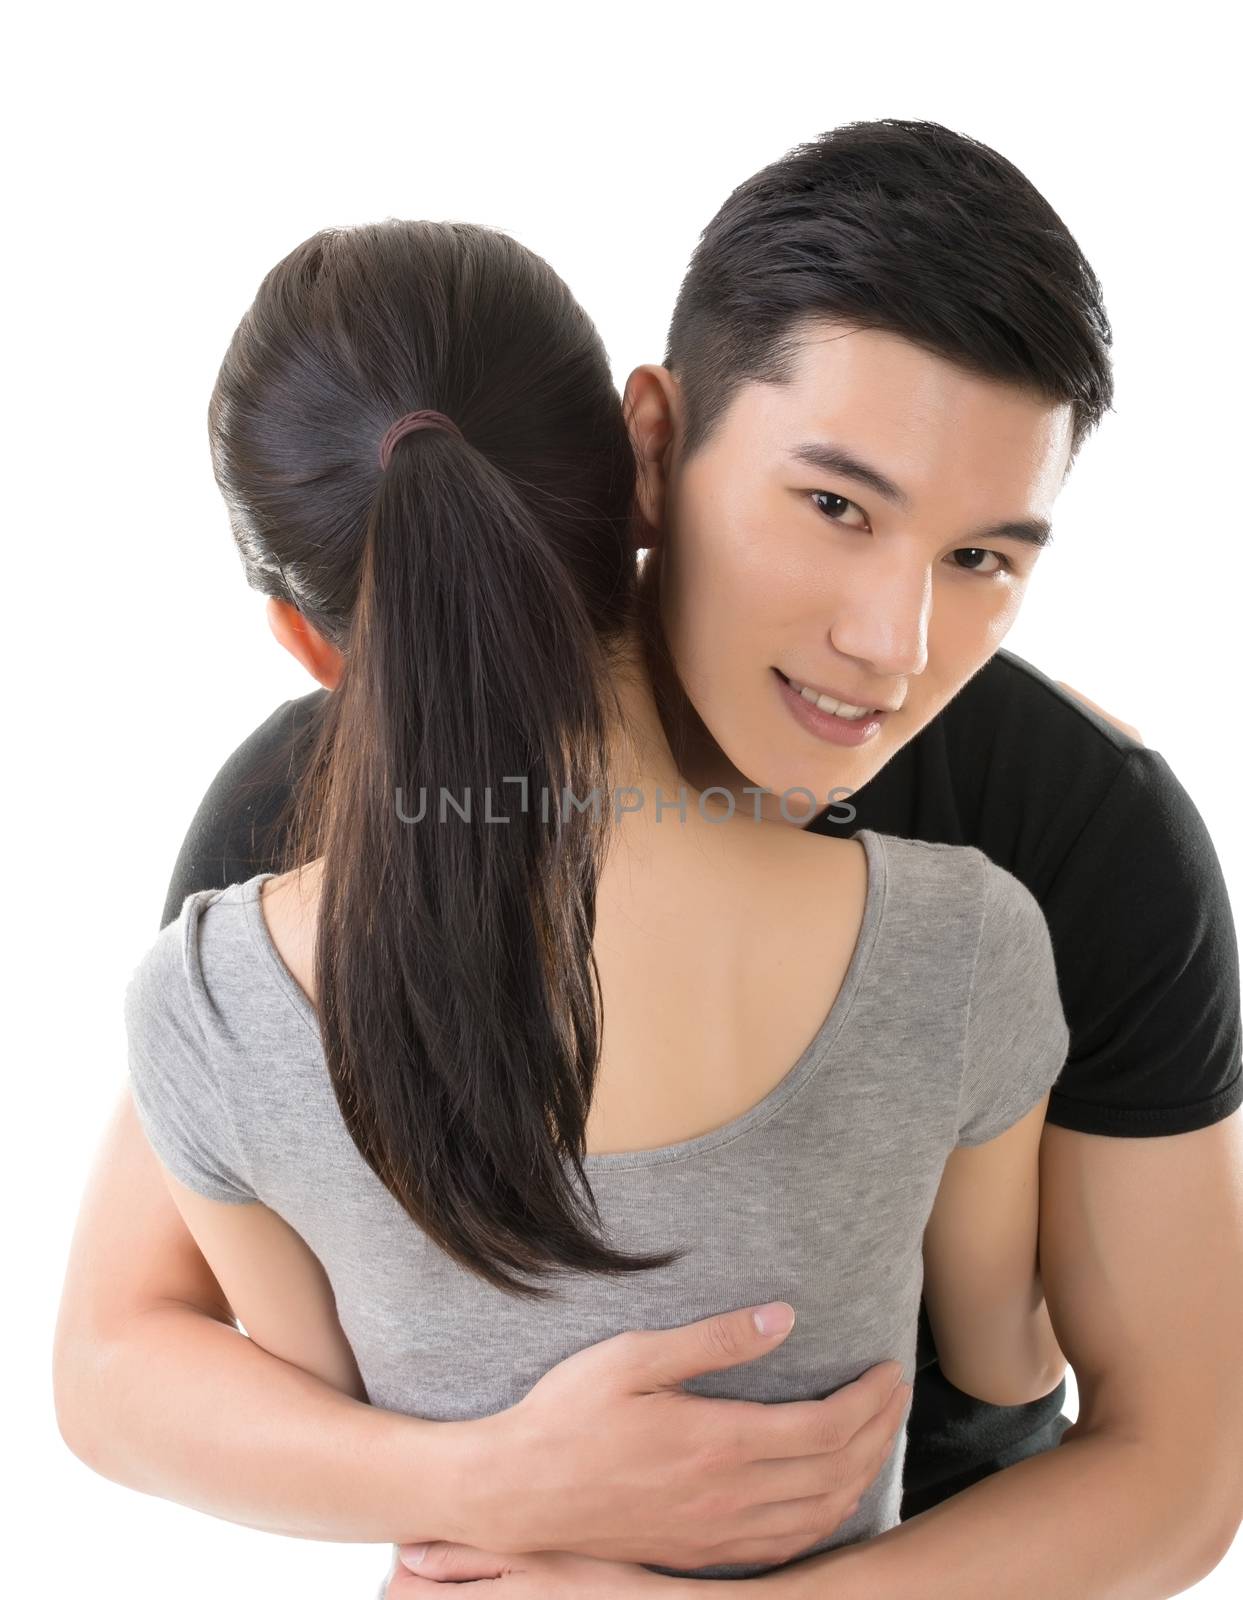 man hug his girlfriend by elwynn